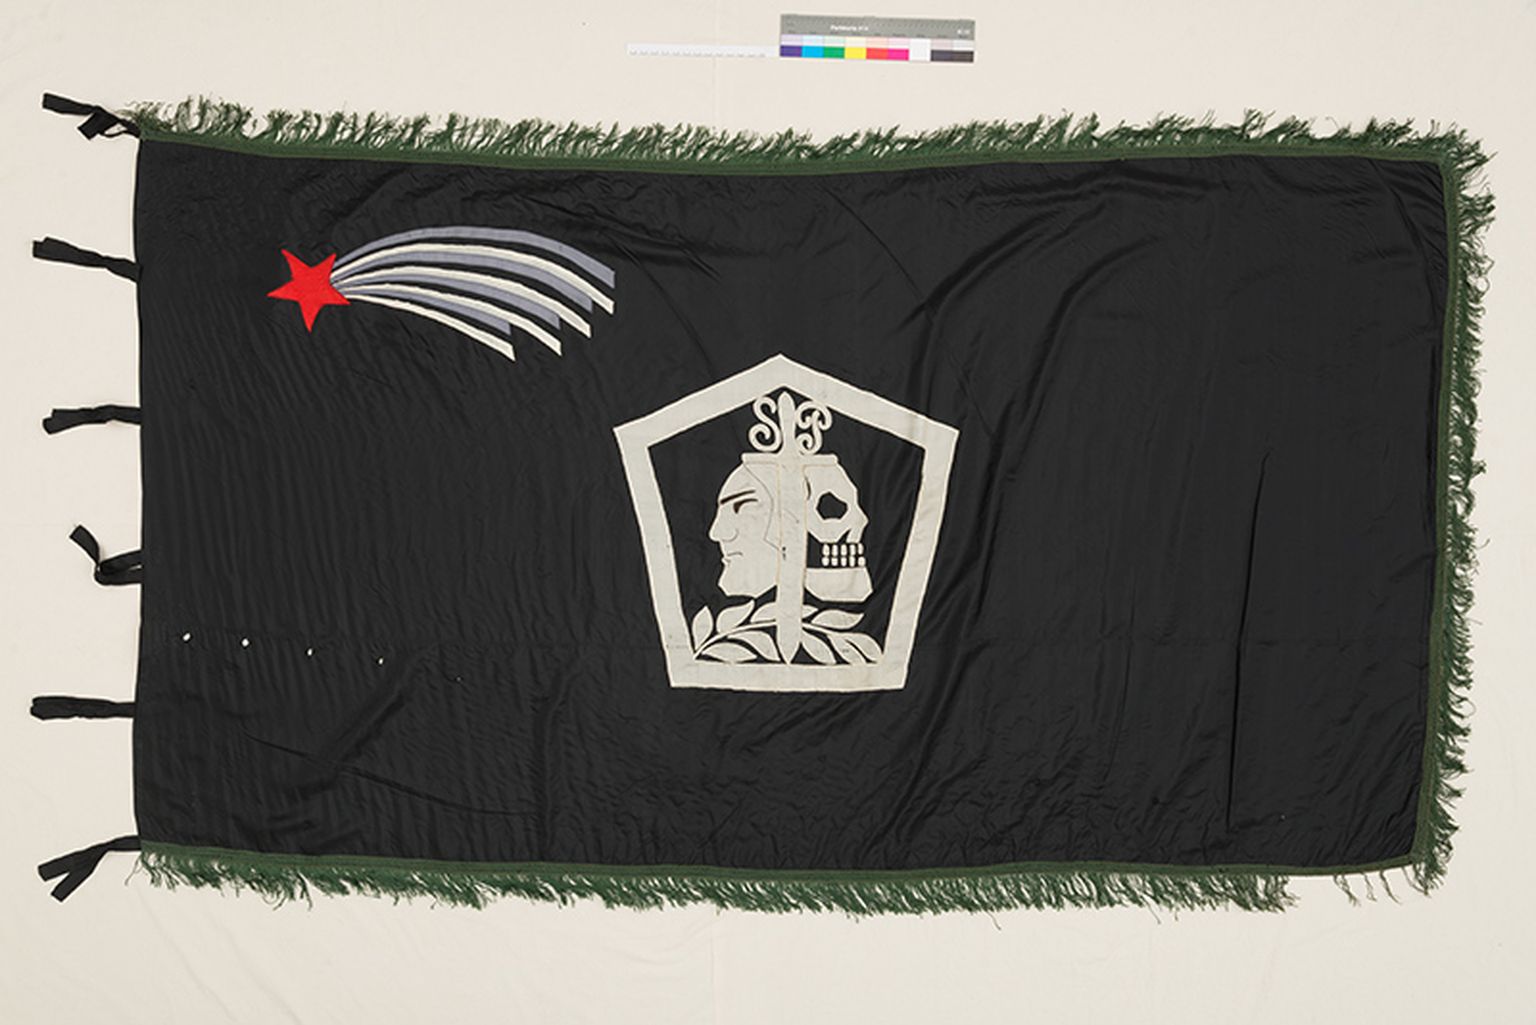 Sakala partisanide lipp. Elusa inimese pale tähendab elu, kolju surma, mõõk kaitset, loorberioks võitu ja au, must tähistab Eesti mullapinda ja hõbehall ustavust.